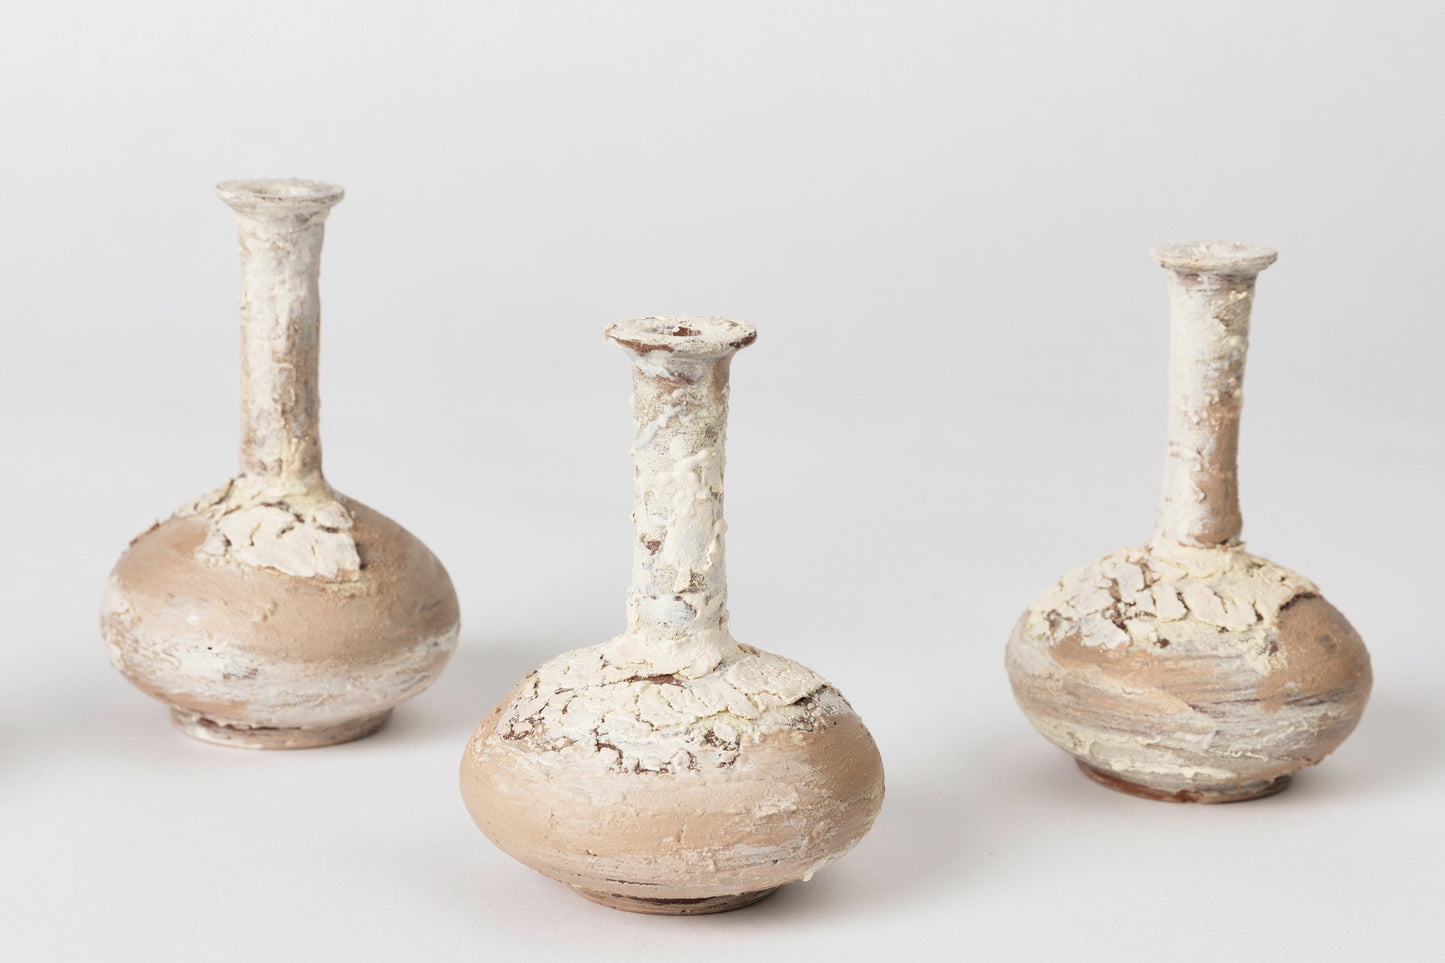 Ceramic Mini Vase, Crackled